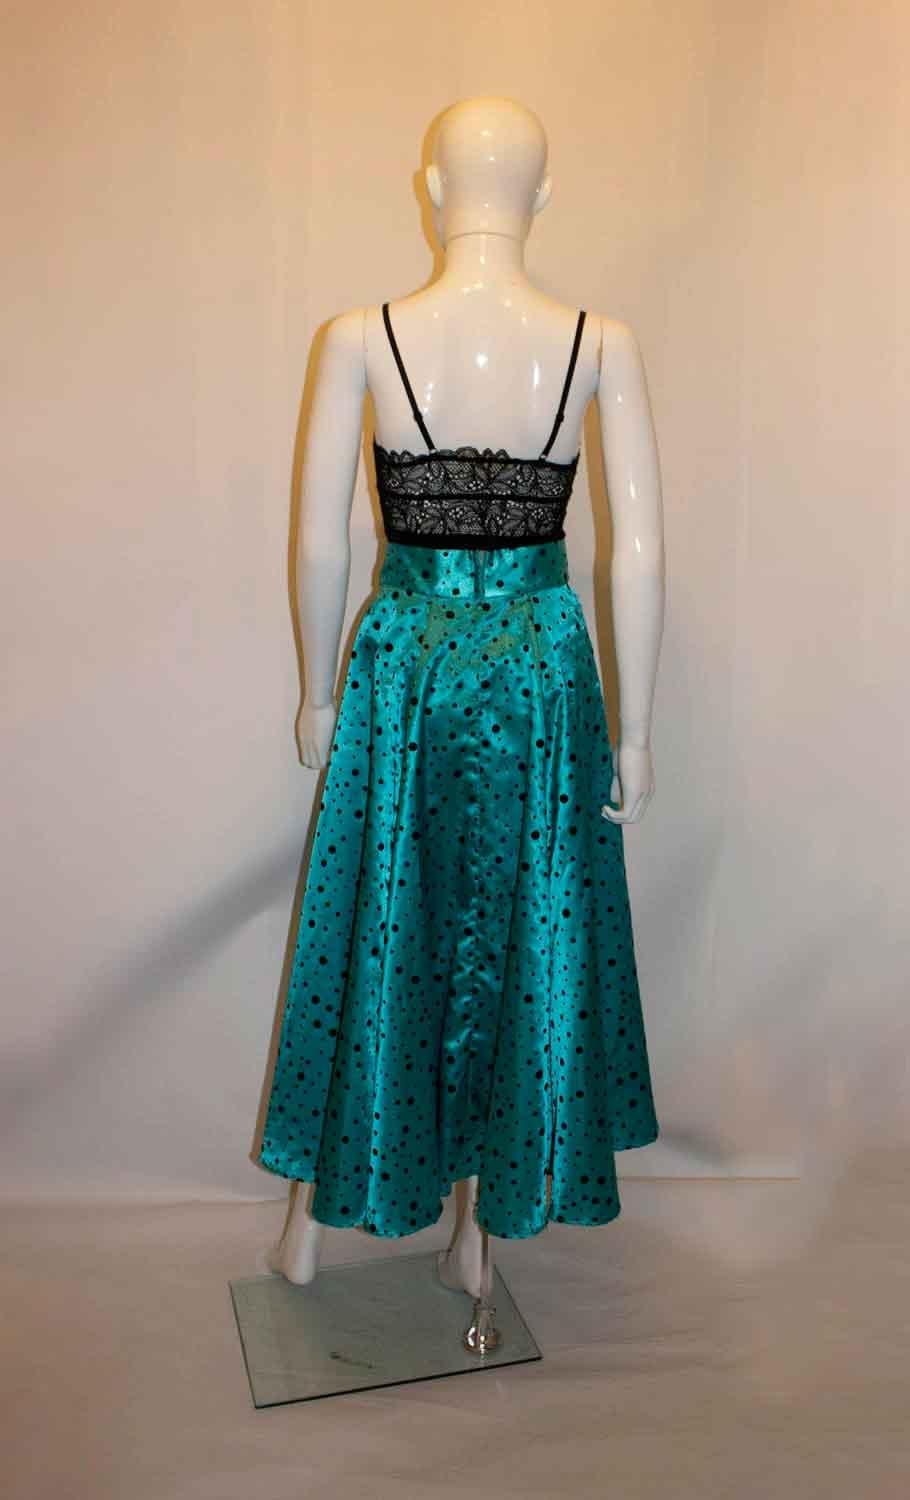 Une magnifique jupe ample, idéale pour la danse. D'une jolie couleur turquoise avec des taches noires de différentes tailles, la jupe a une ouverture zippée au dos et n'est pas doublée. Mesures : taille 26'', longueur 36''.